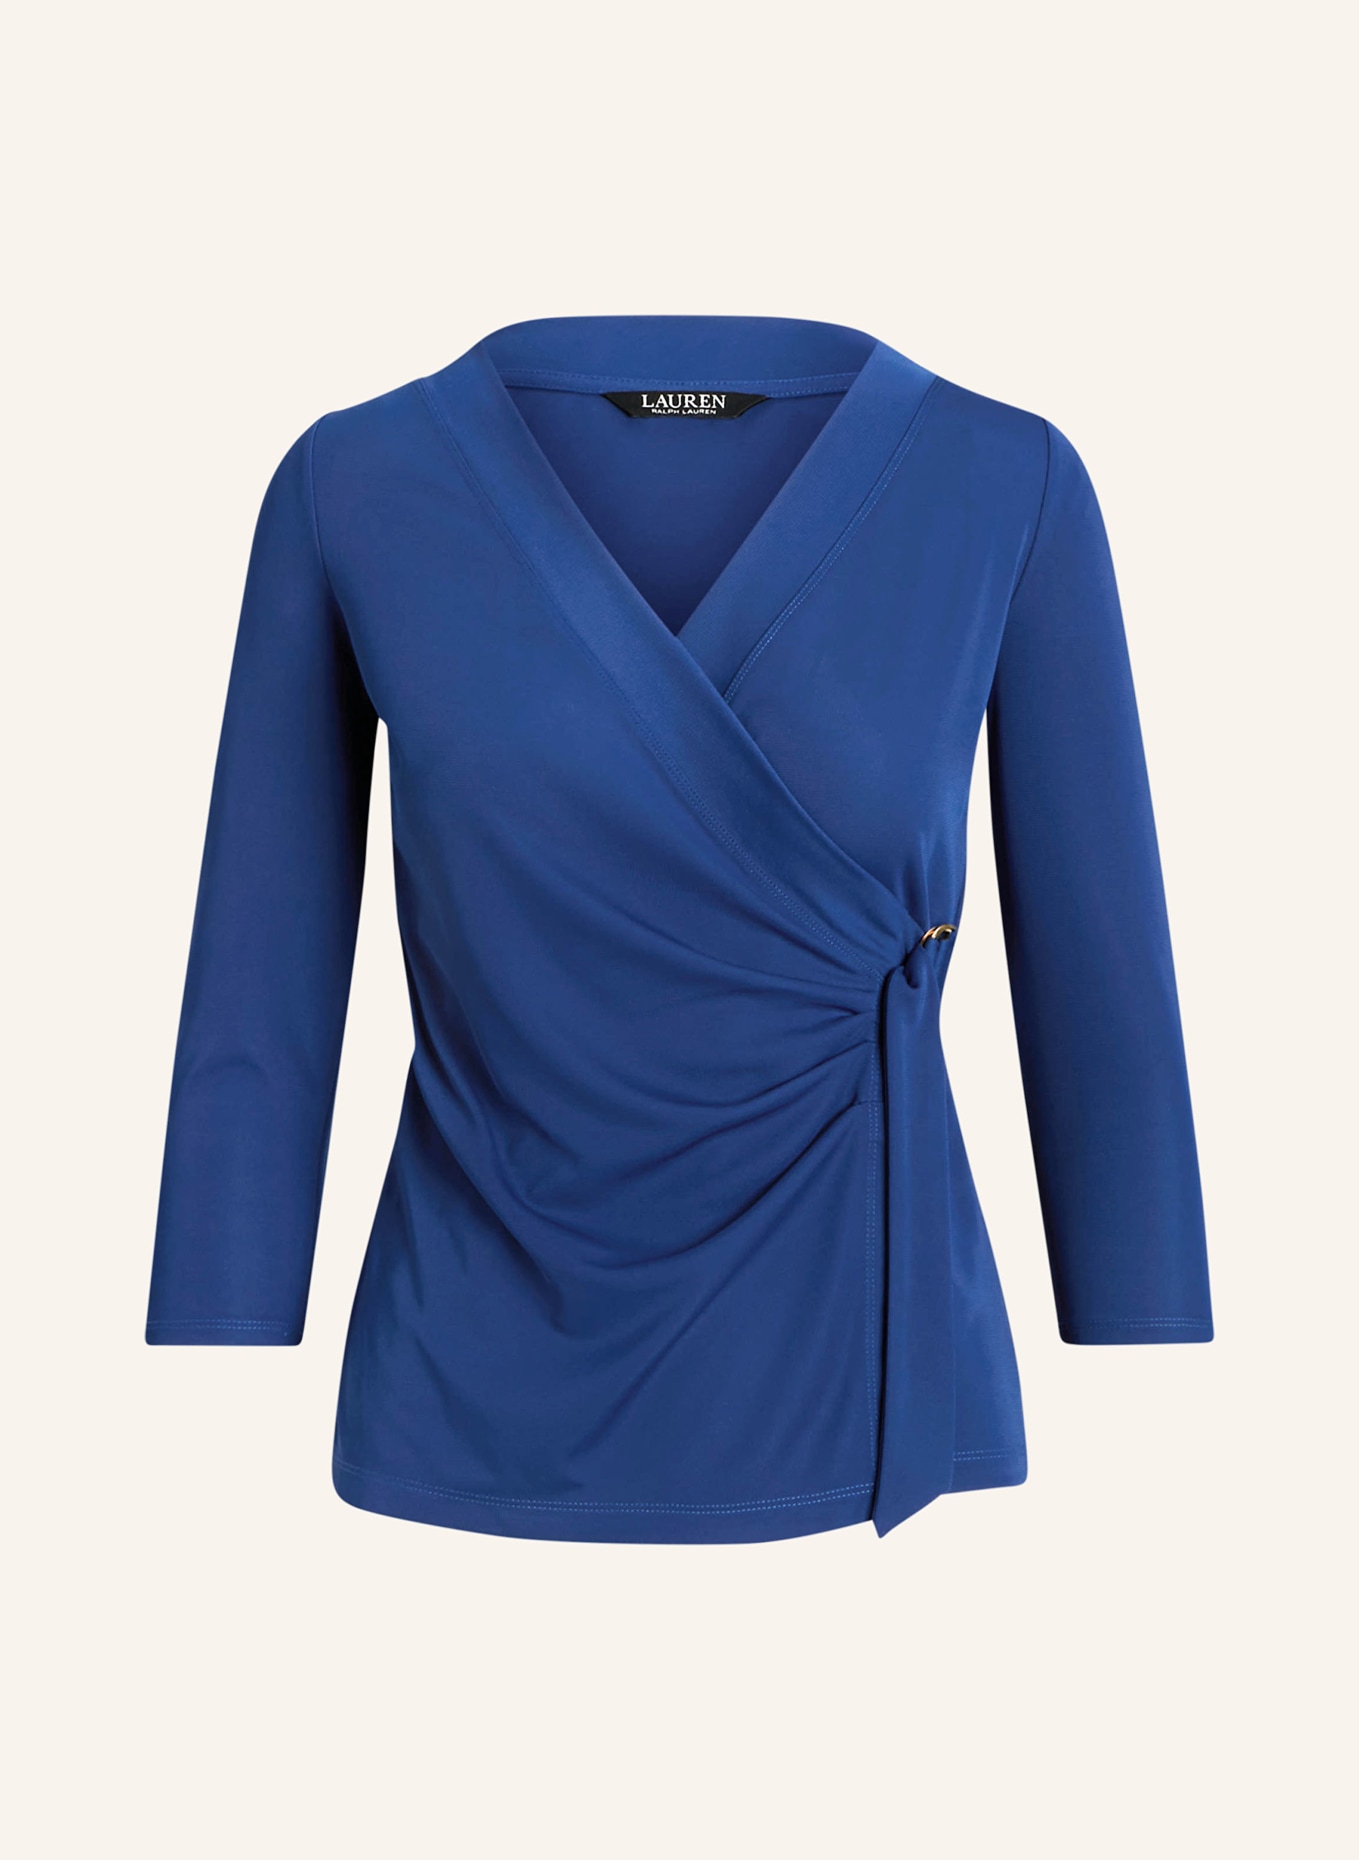 LAUREN RALPH LAUREN Shirt in wrap look with 3/4 sleeves, Color: BLUE (Image 1)